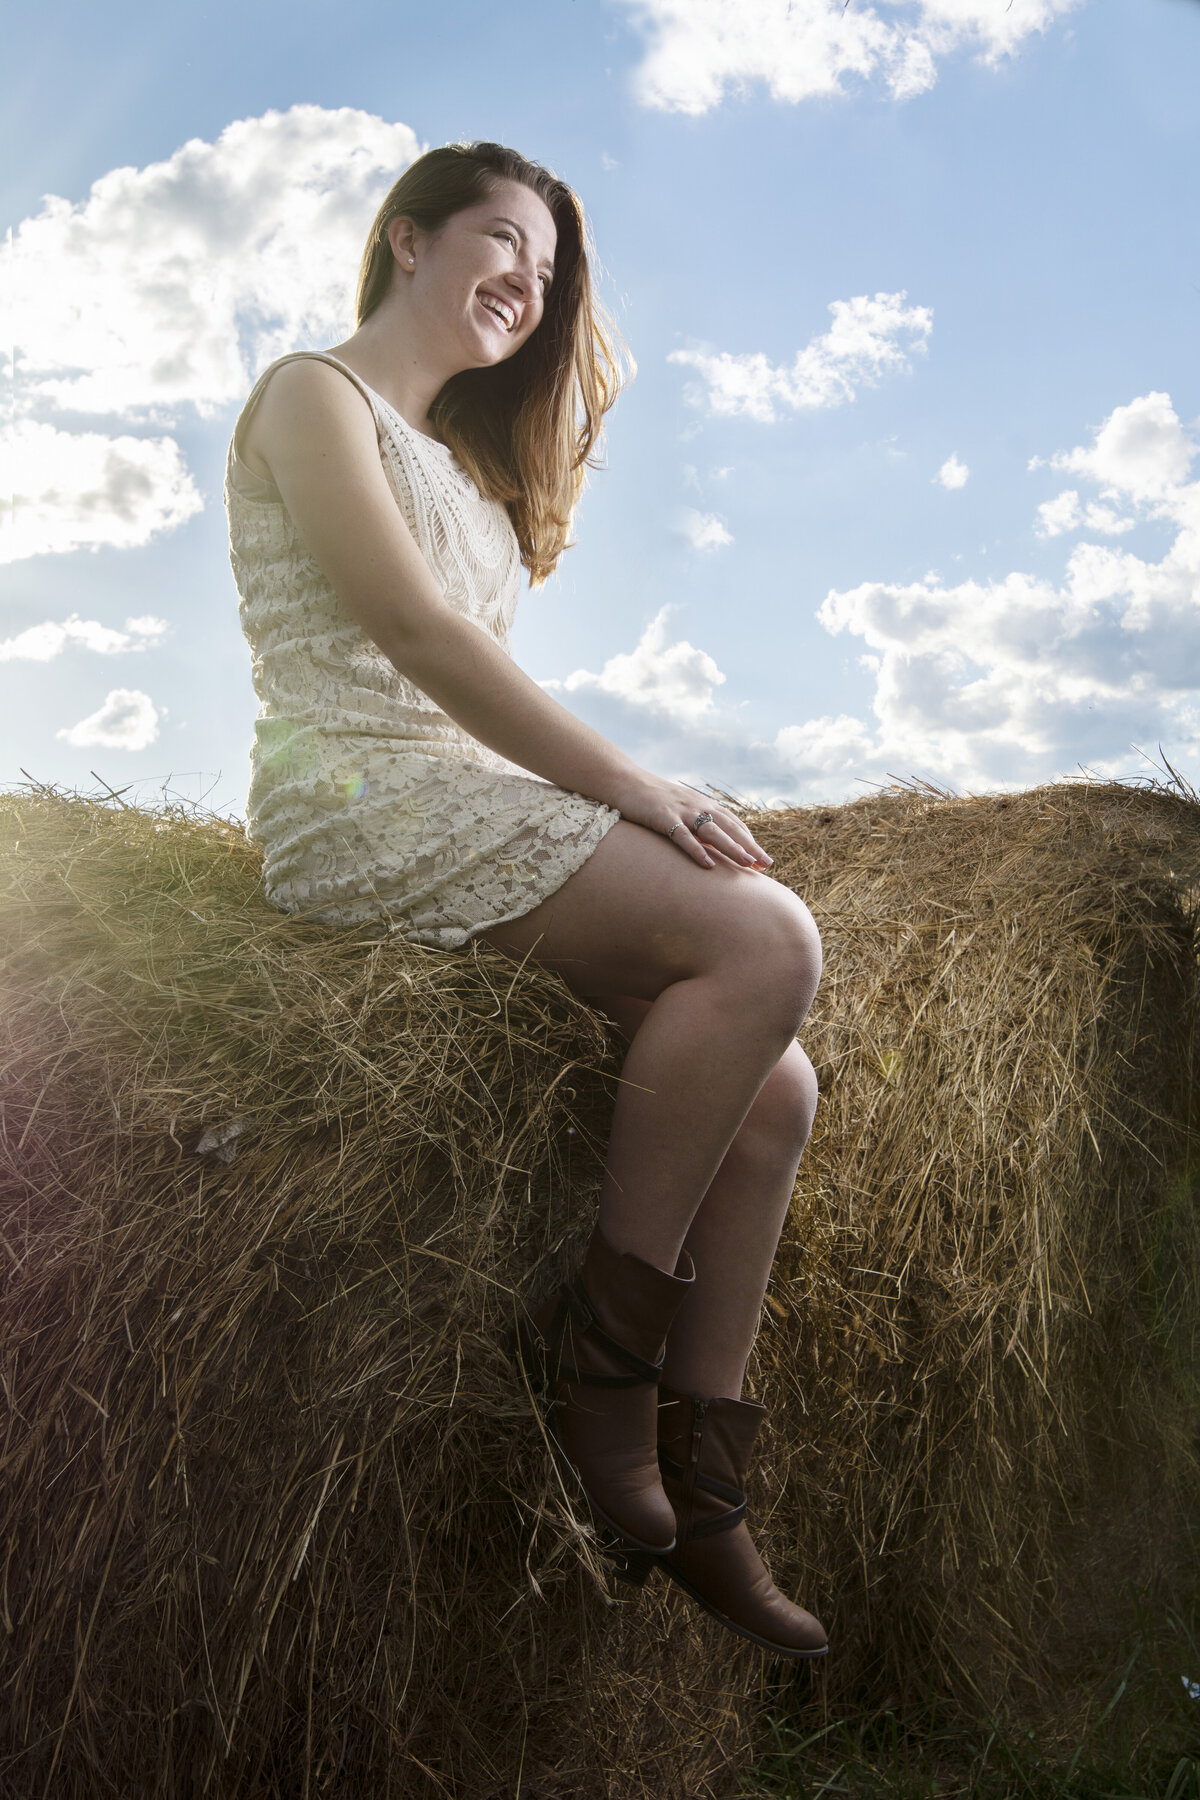 Megan sitting on hay bale